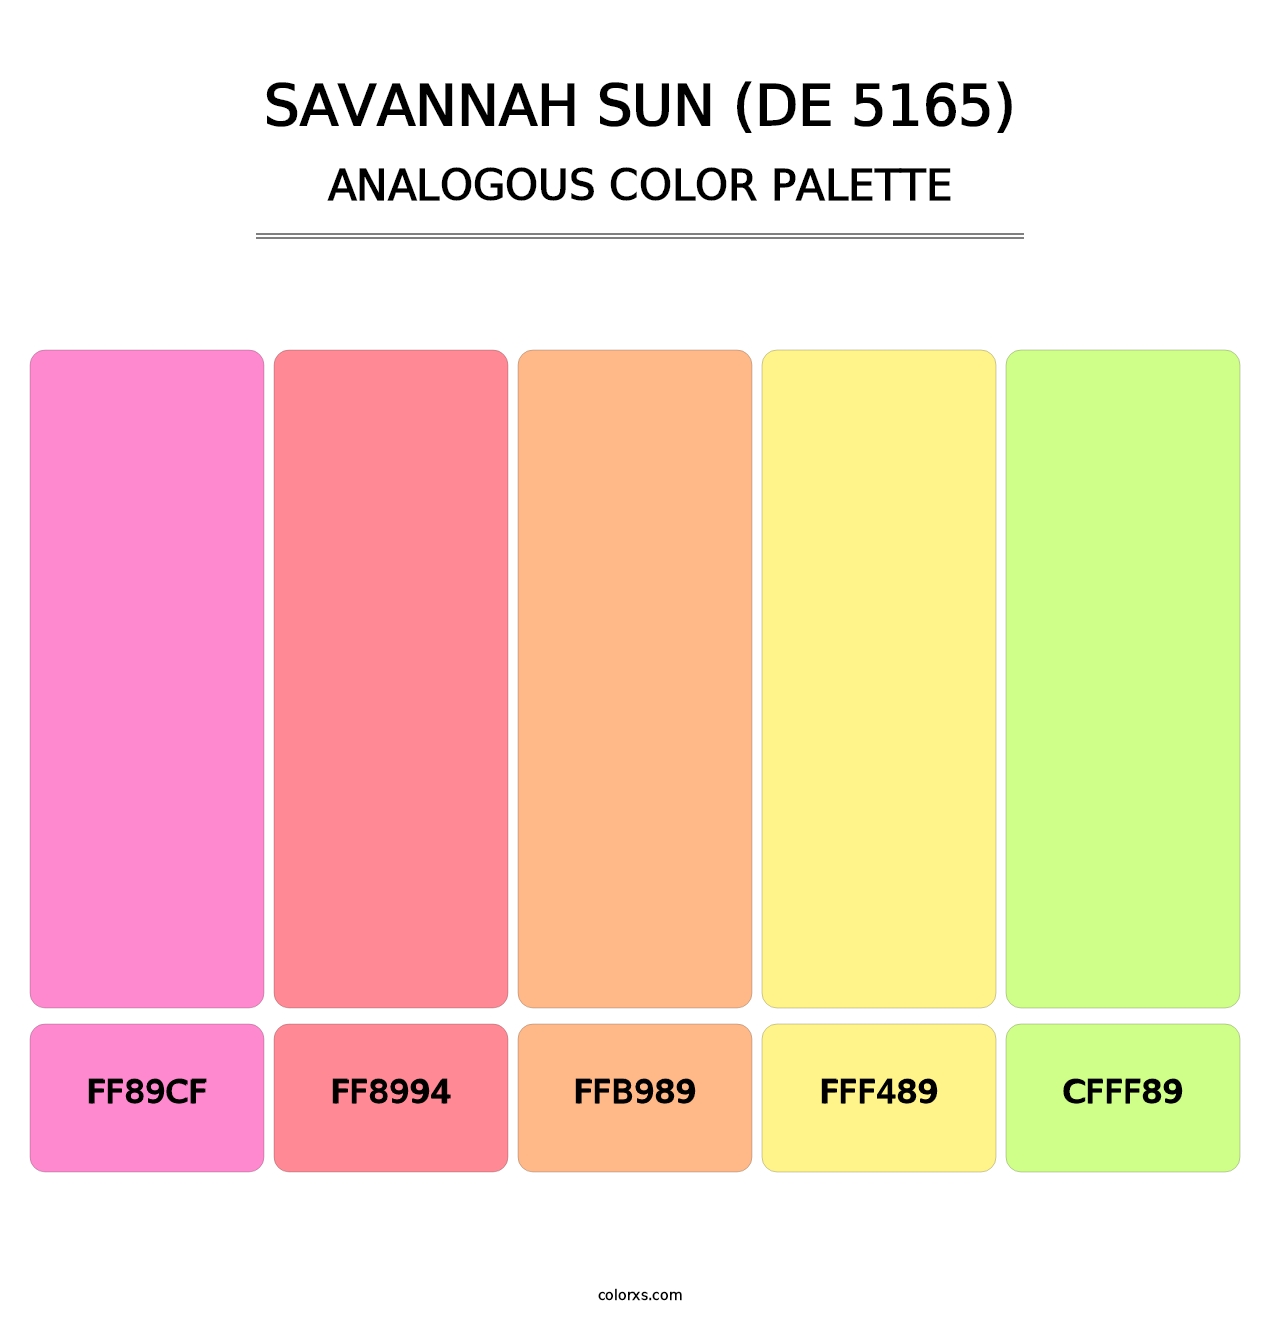 Savannah Sun (DE 5165) - Analogous Color Palette